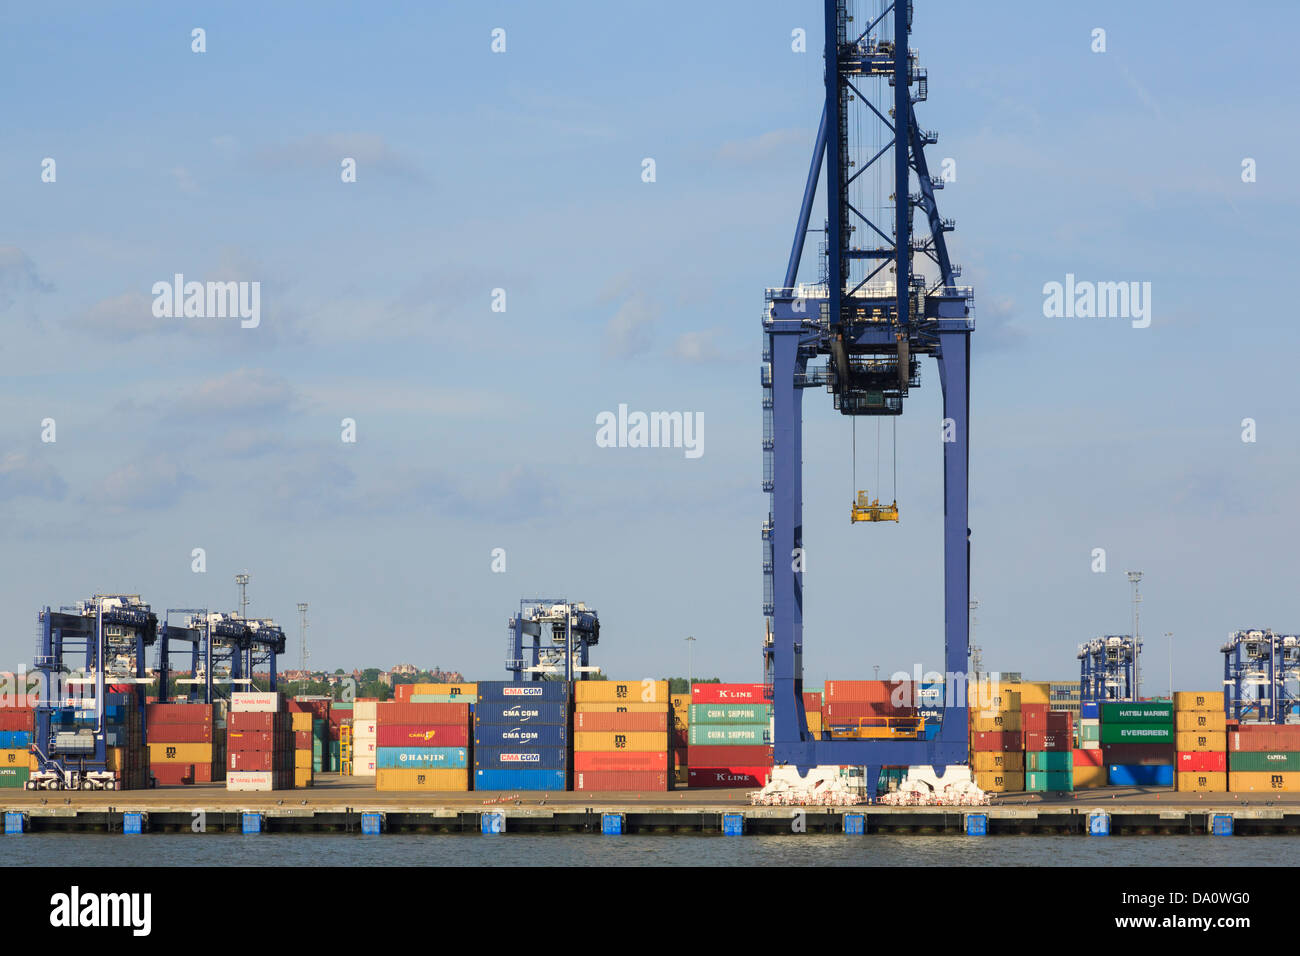 Gantry Kran zum heben von Containern auf dockside terminal Kai der größte britische Containerhafen in Großbritannien. Felixstowe Port Suffolk England Großbritannien Stockfoto